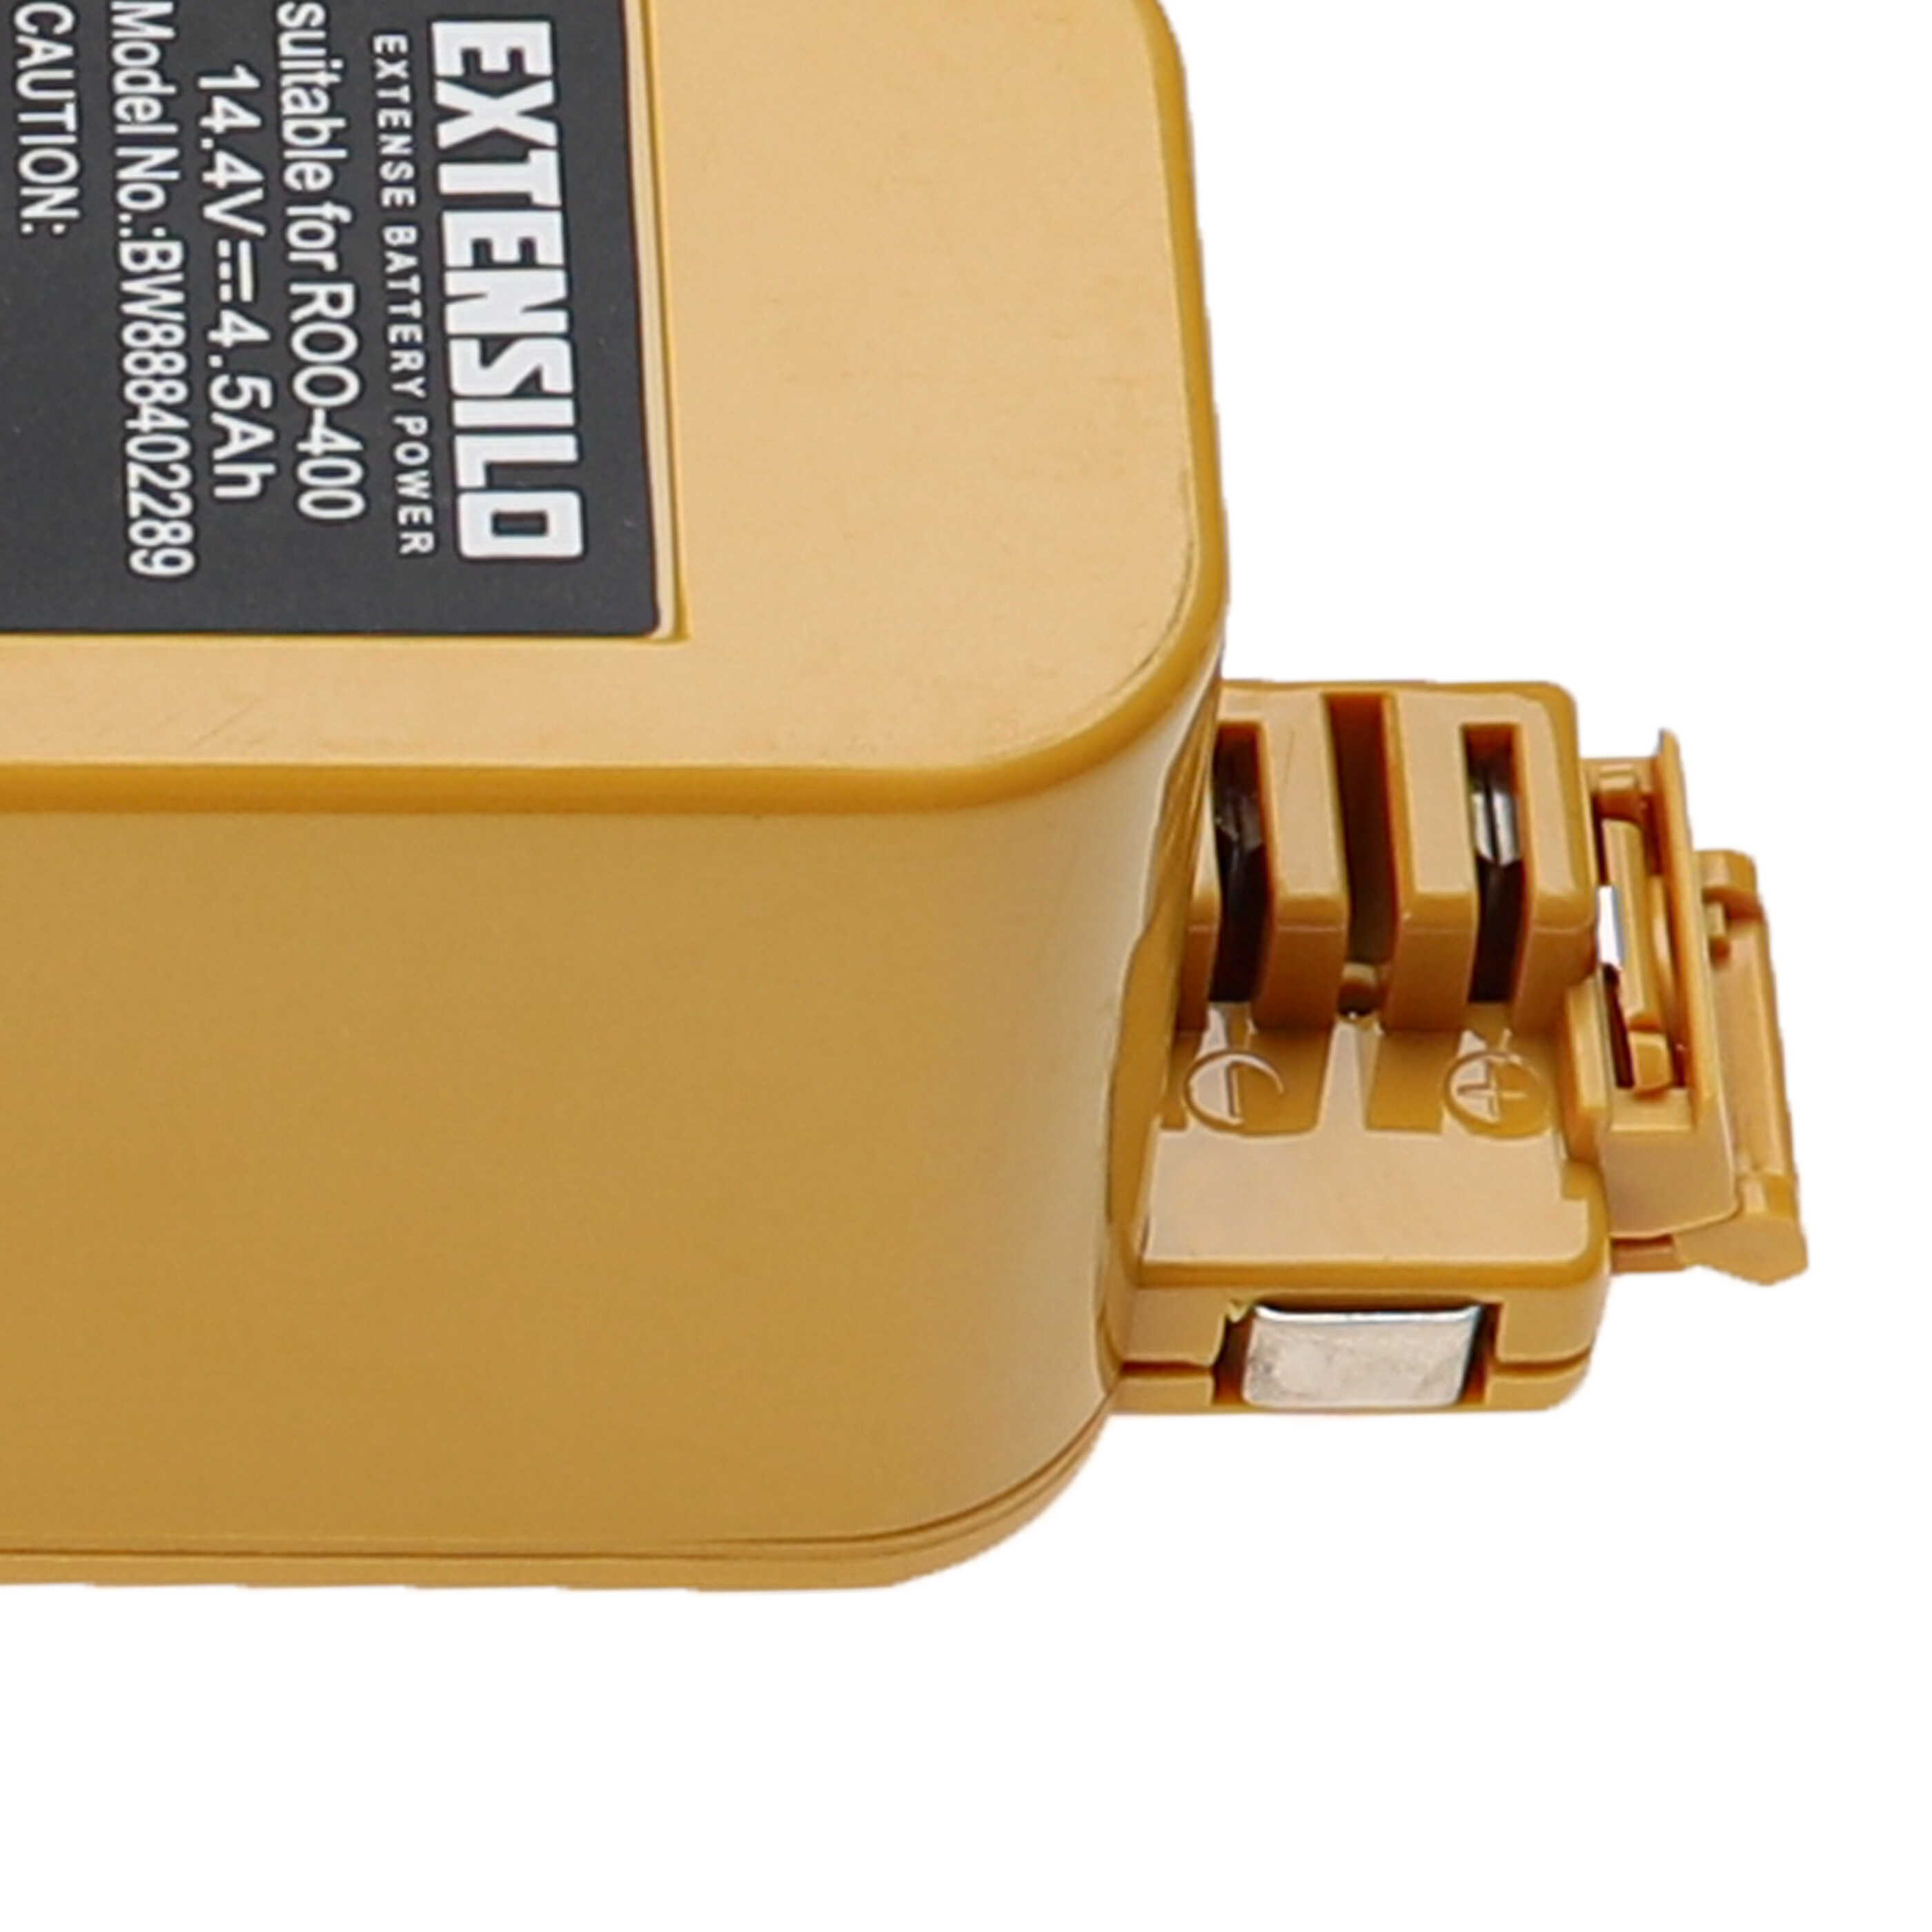 Batteria sostituisce APS 4905, NC-3493-919, 11700, 17373 per aspirapolvere iRobot - 4500mAh 14,4V NiMH giallo